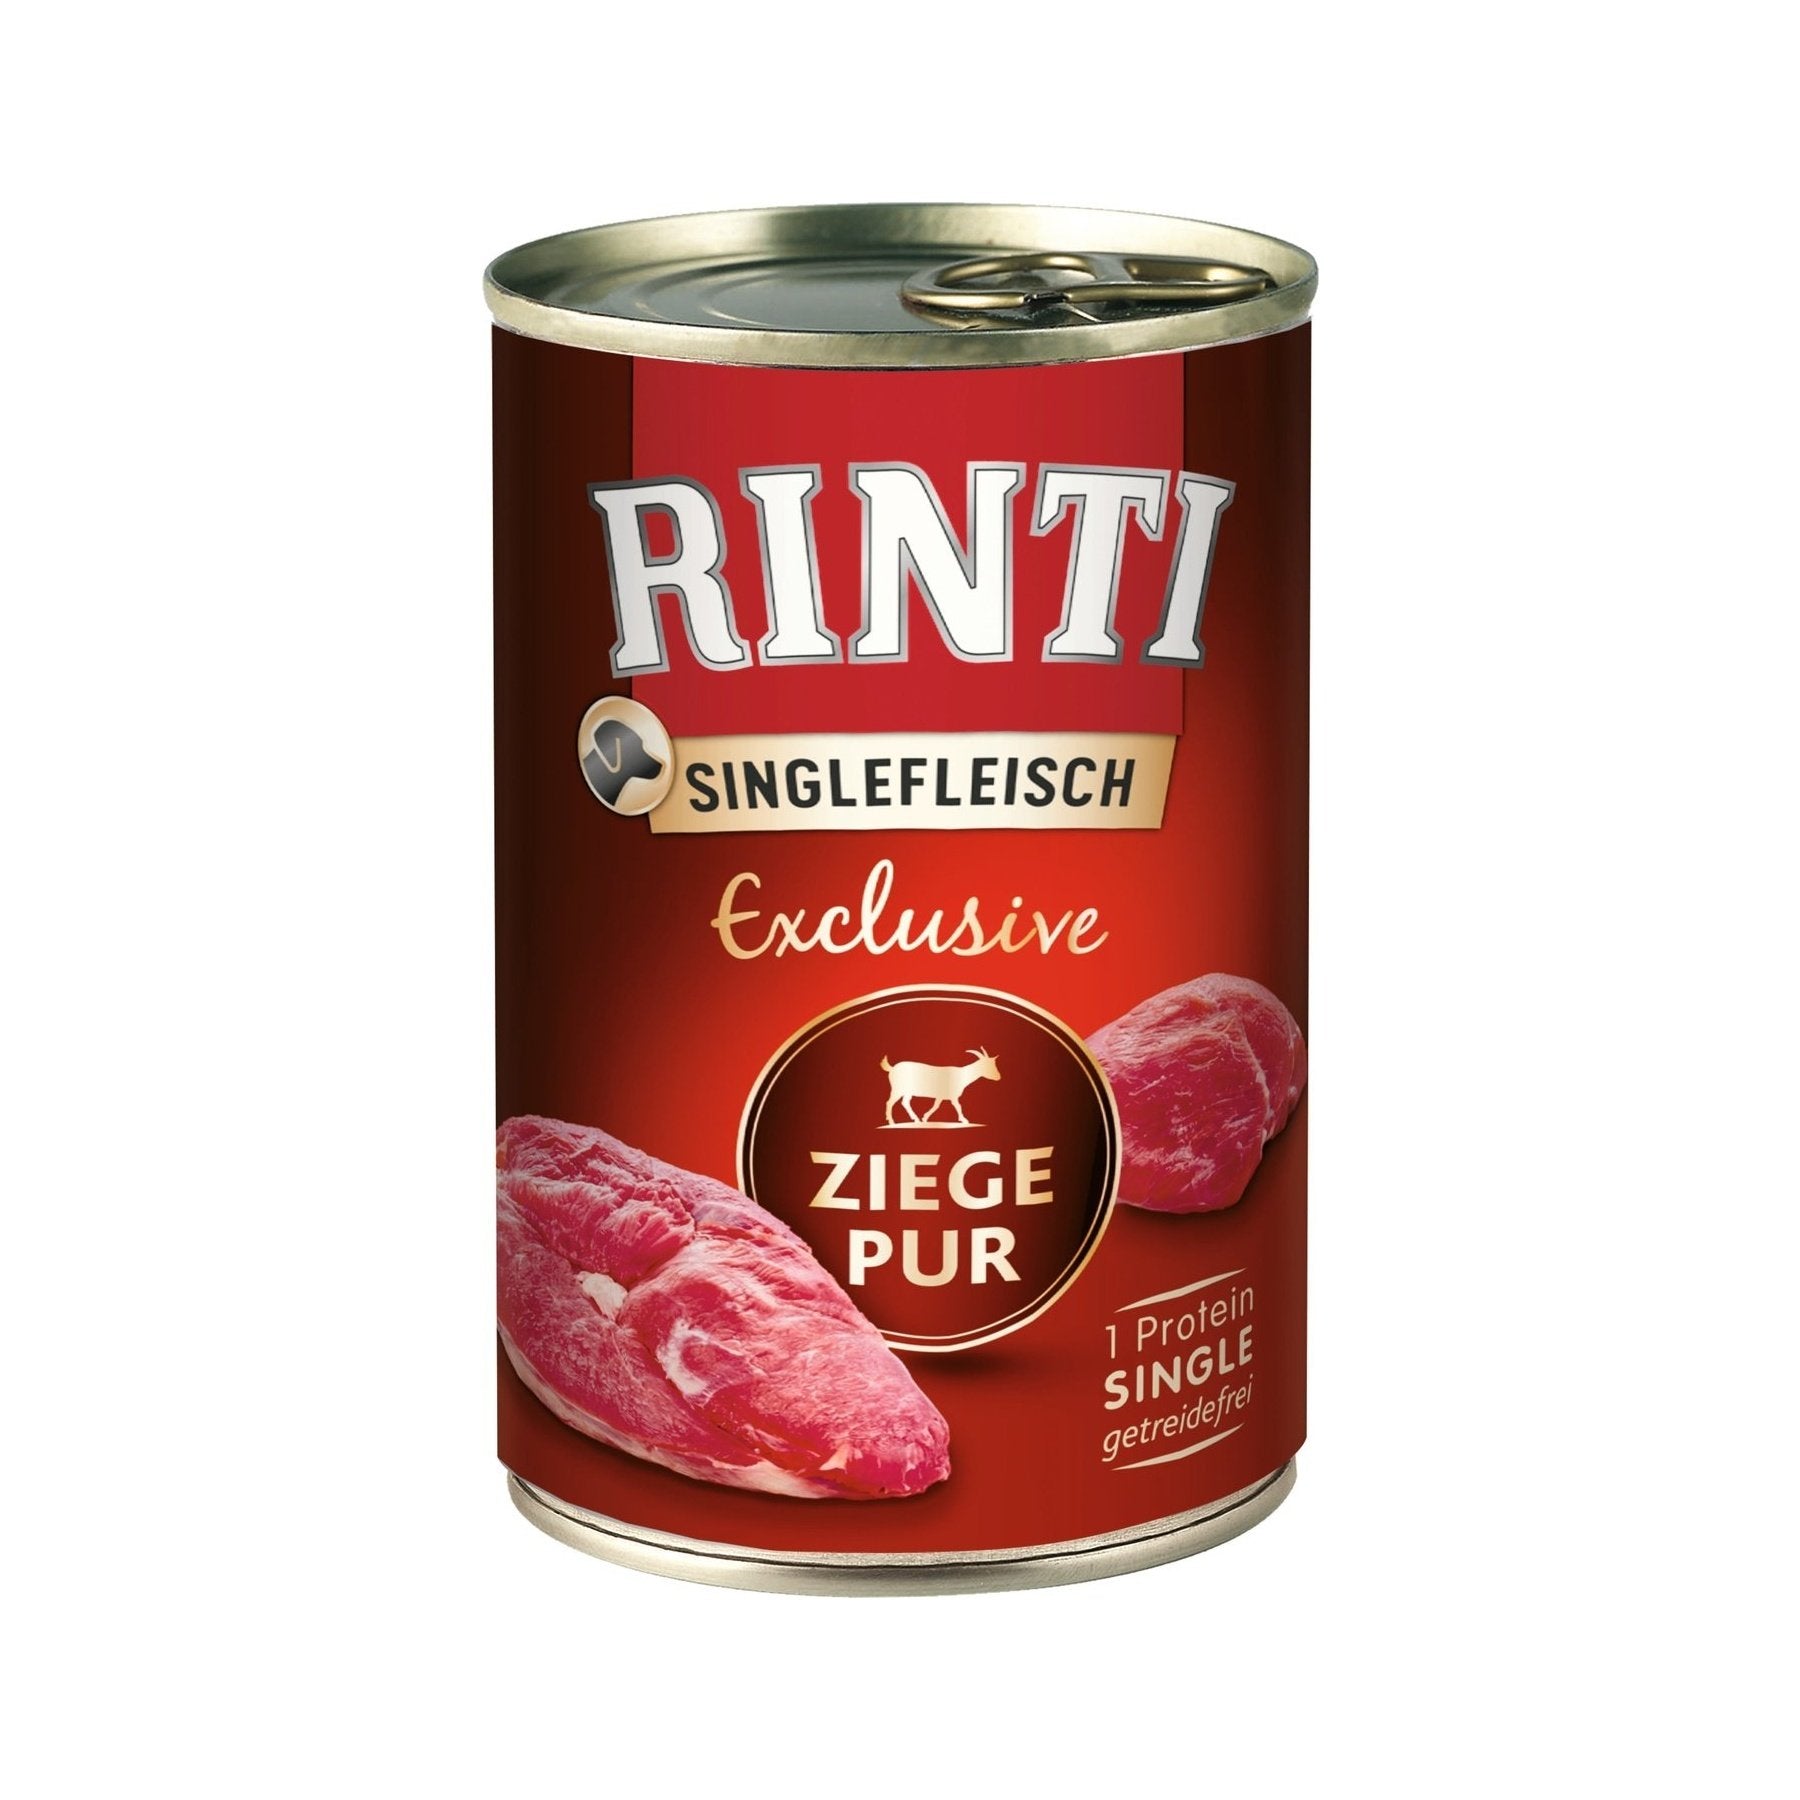 Rinti Singlefleisch Exclusive Ziege Pur - zoo.de